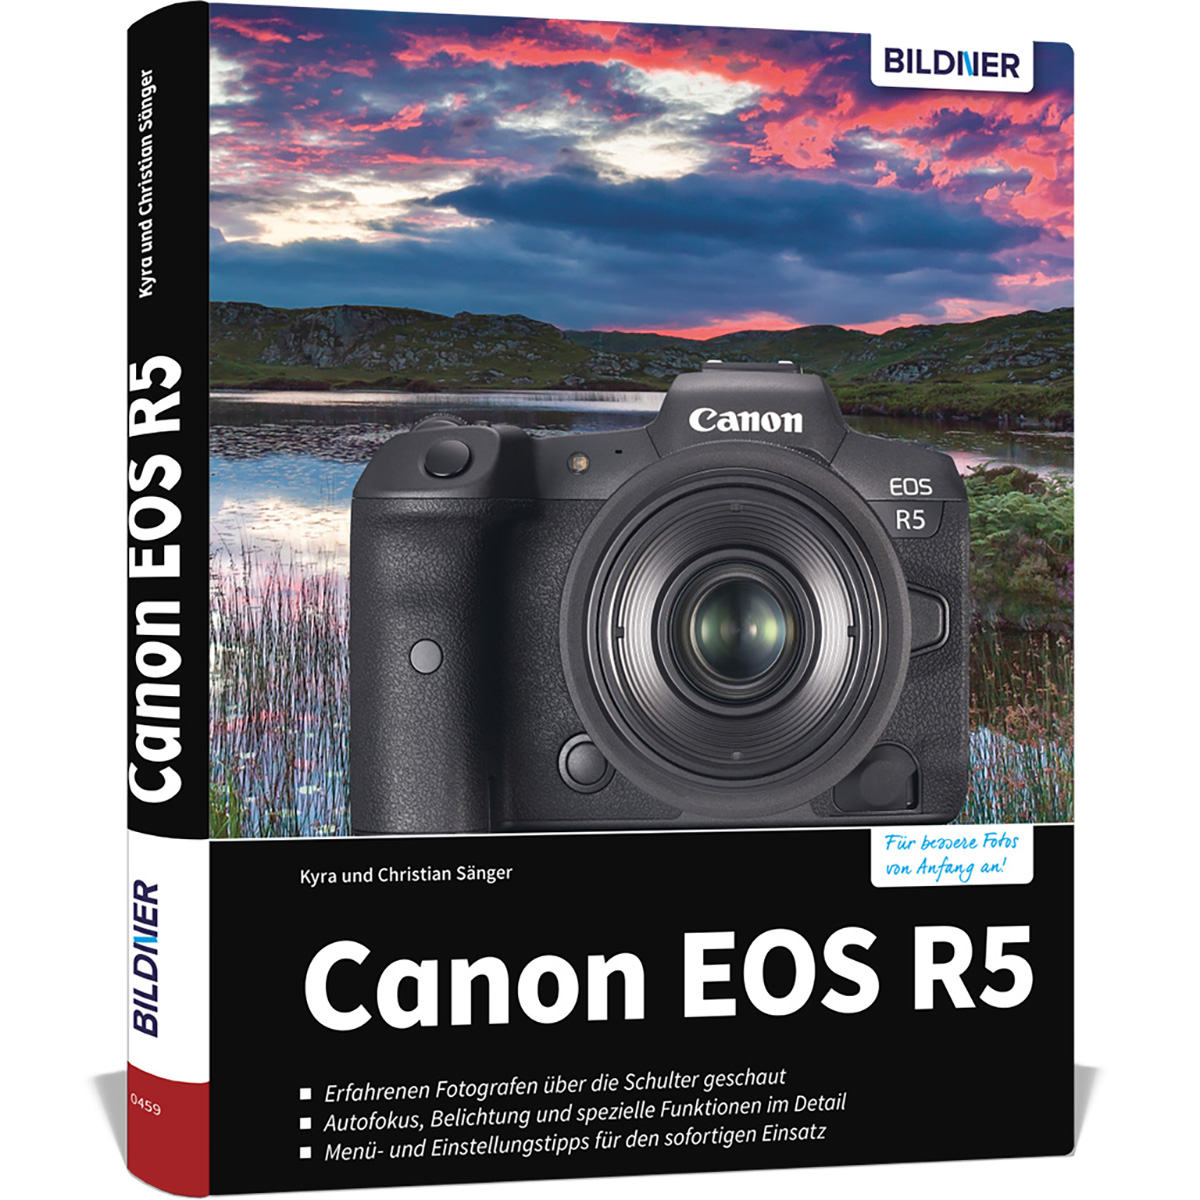 R5 Das Ihrer EOS Canon Praxisbuch Kamera - zu umfangreiche